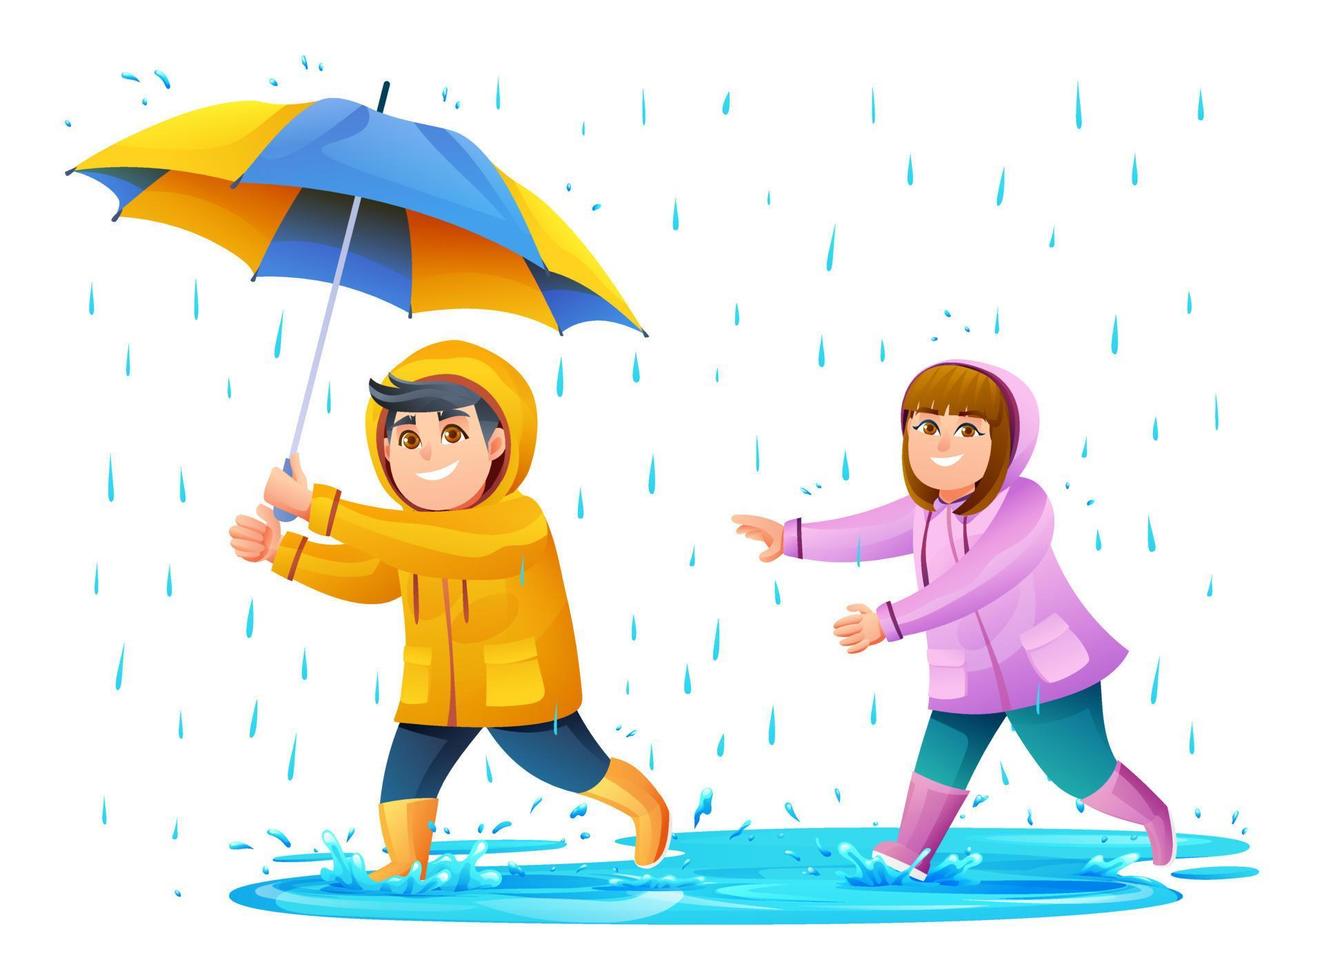 heureux garçon et fille jouant sous la pluie illustration de dessin animé vecteur